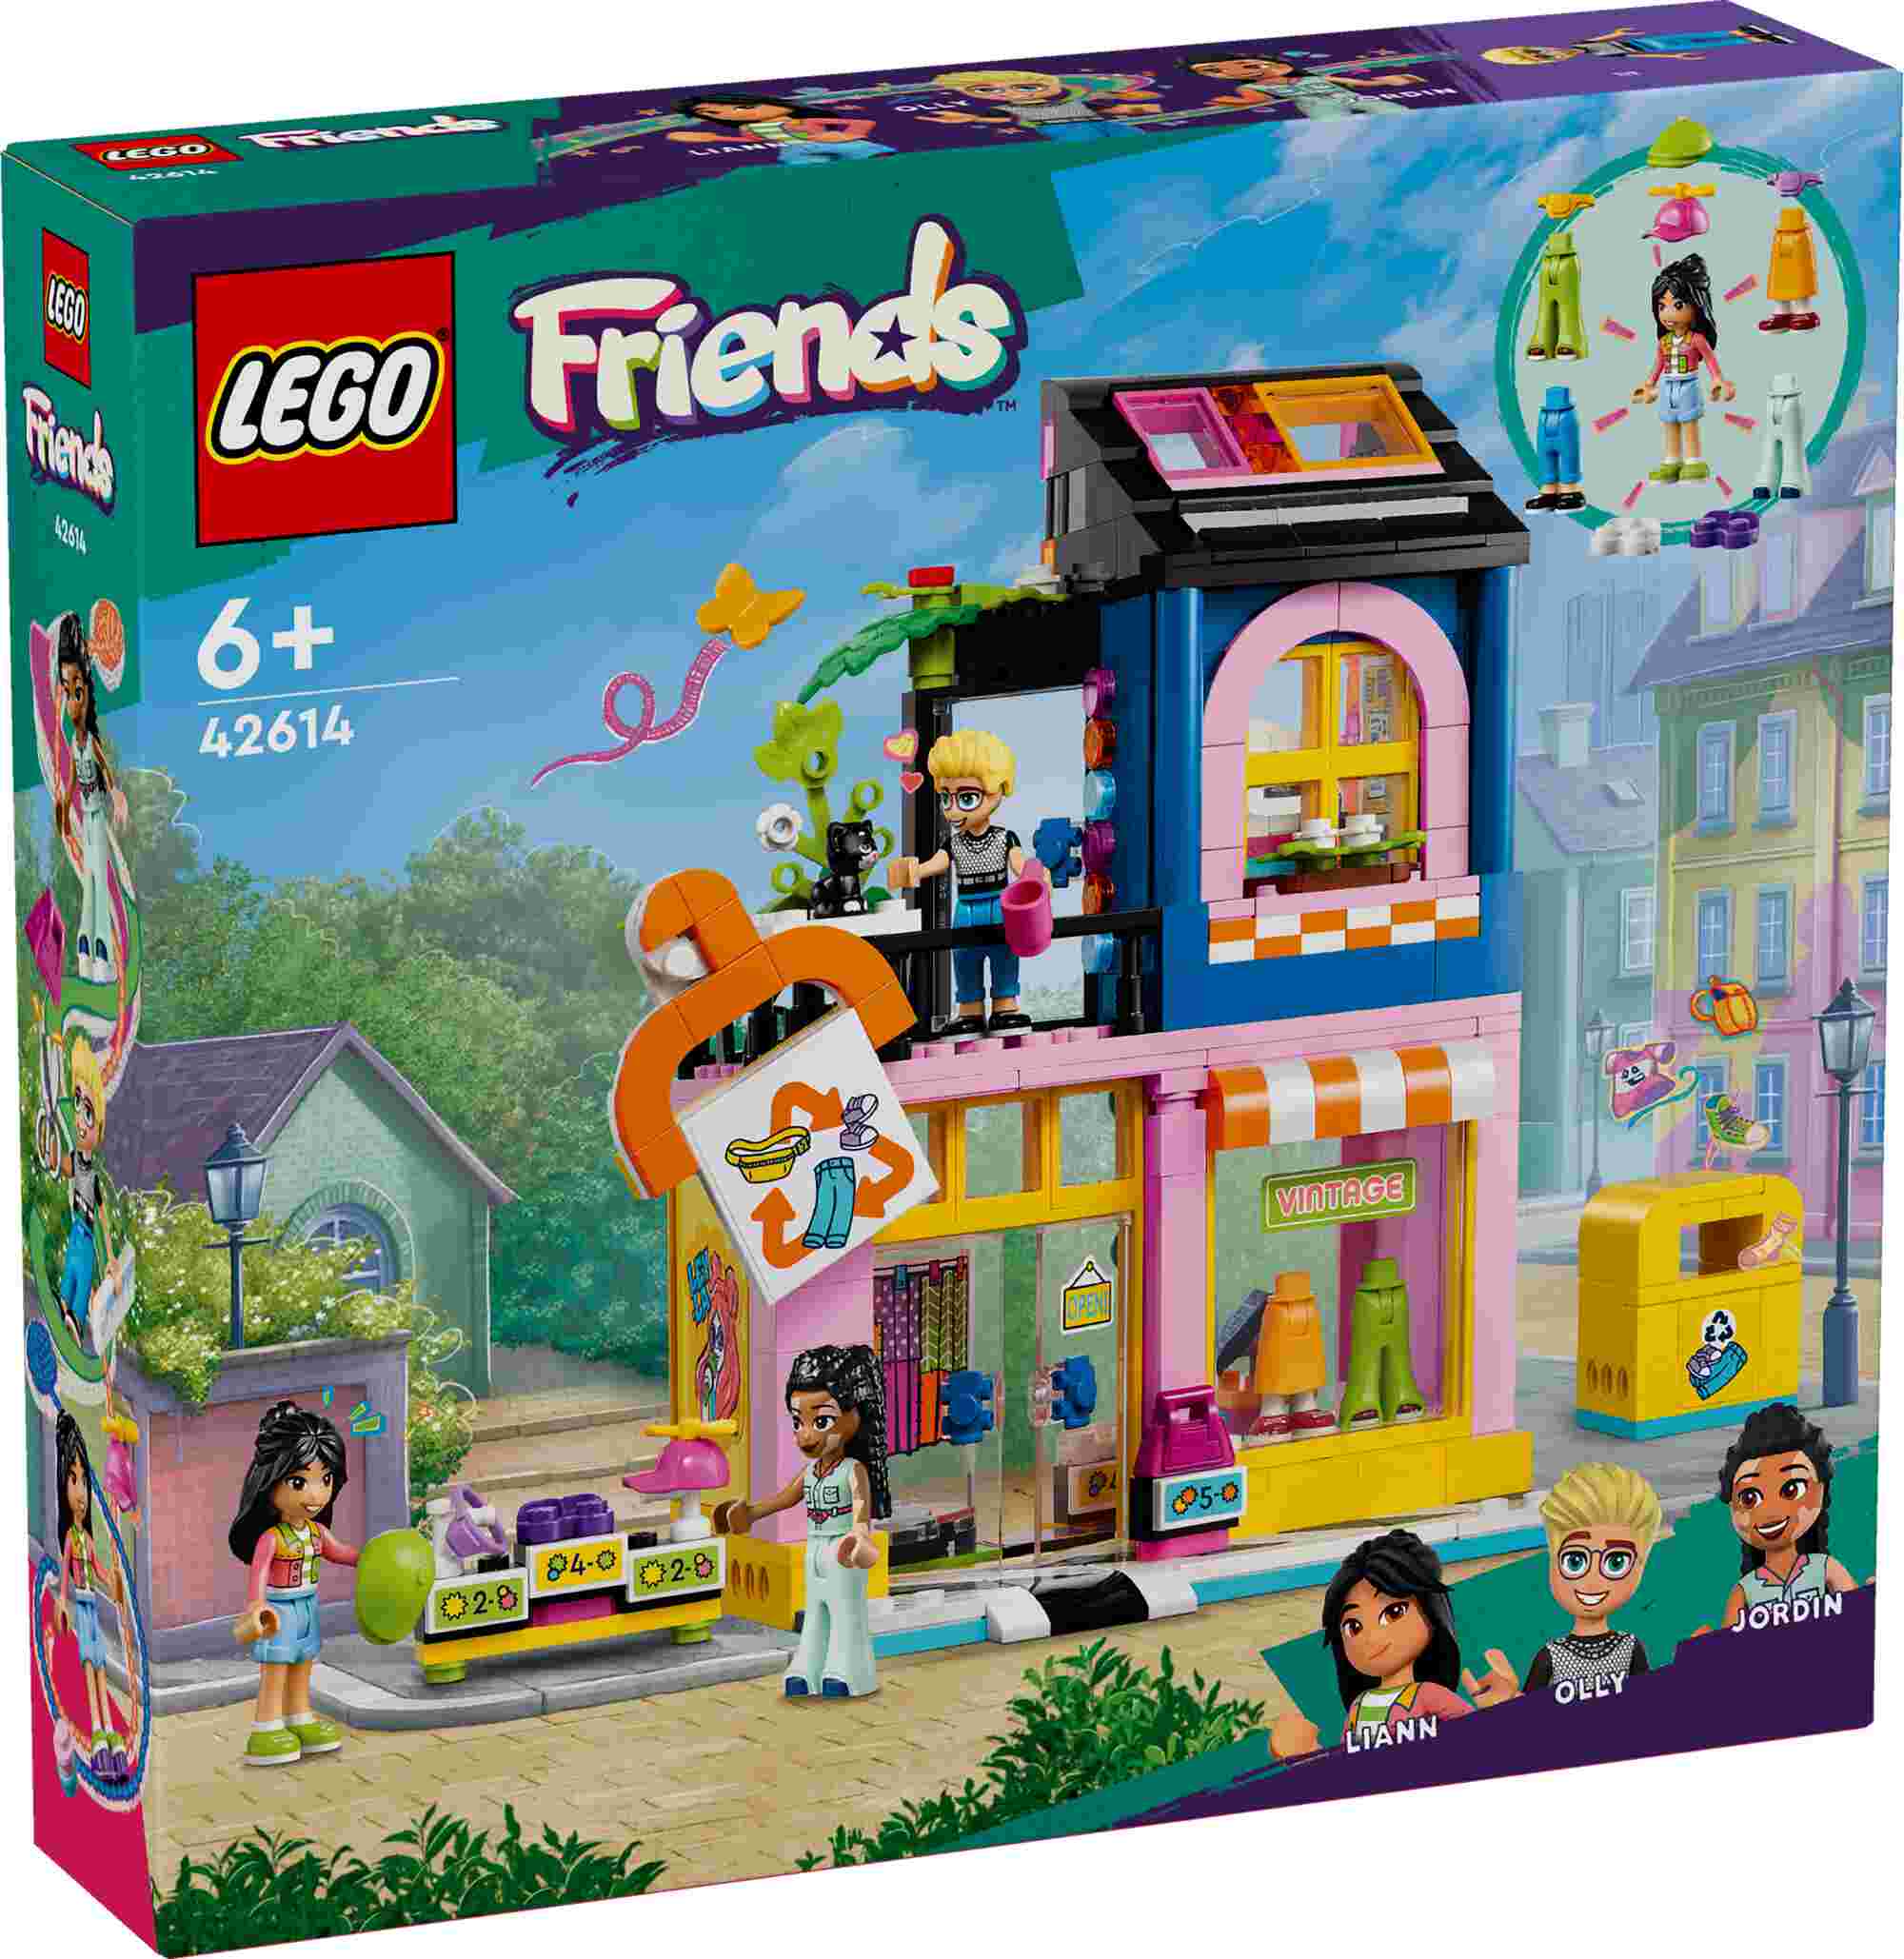 LEGO 42614 Friends Vintage-Modegeschäft, 3 Spielfiguren, Katze, Modezubehör